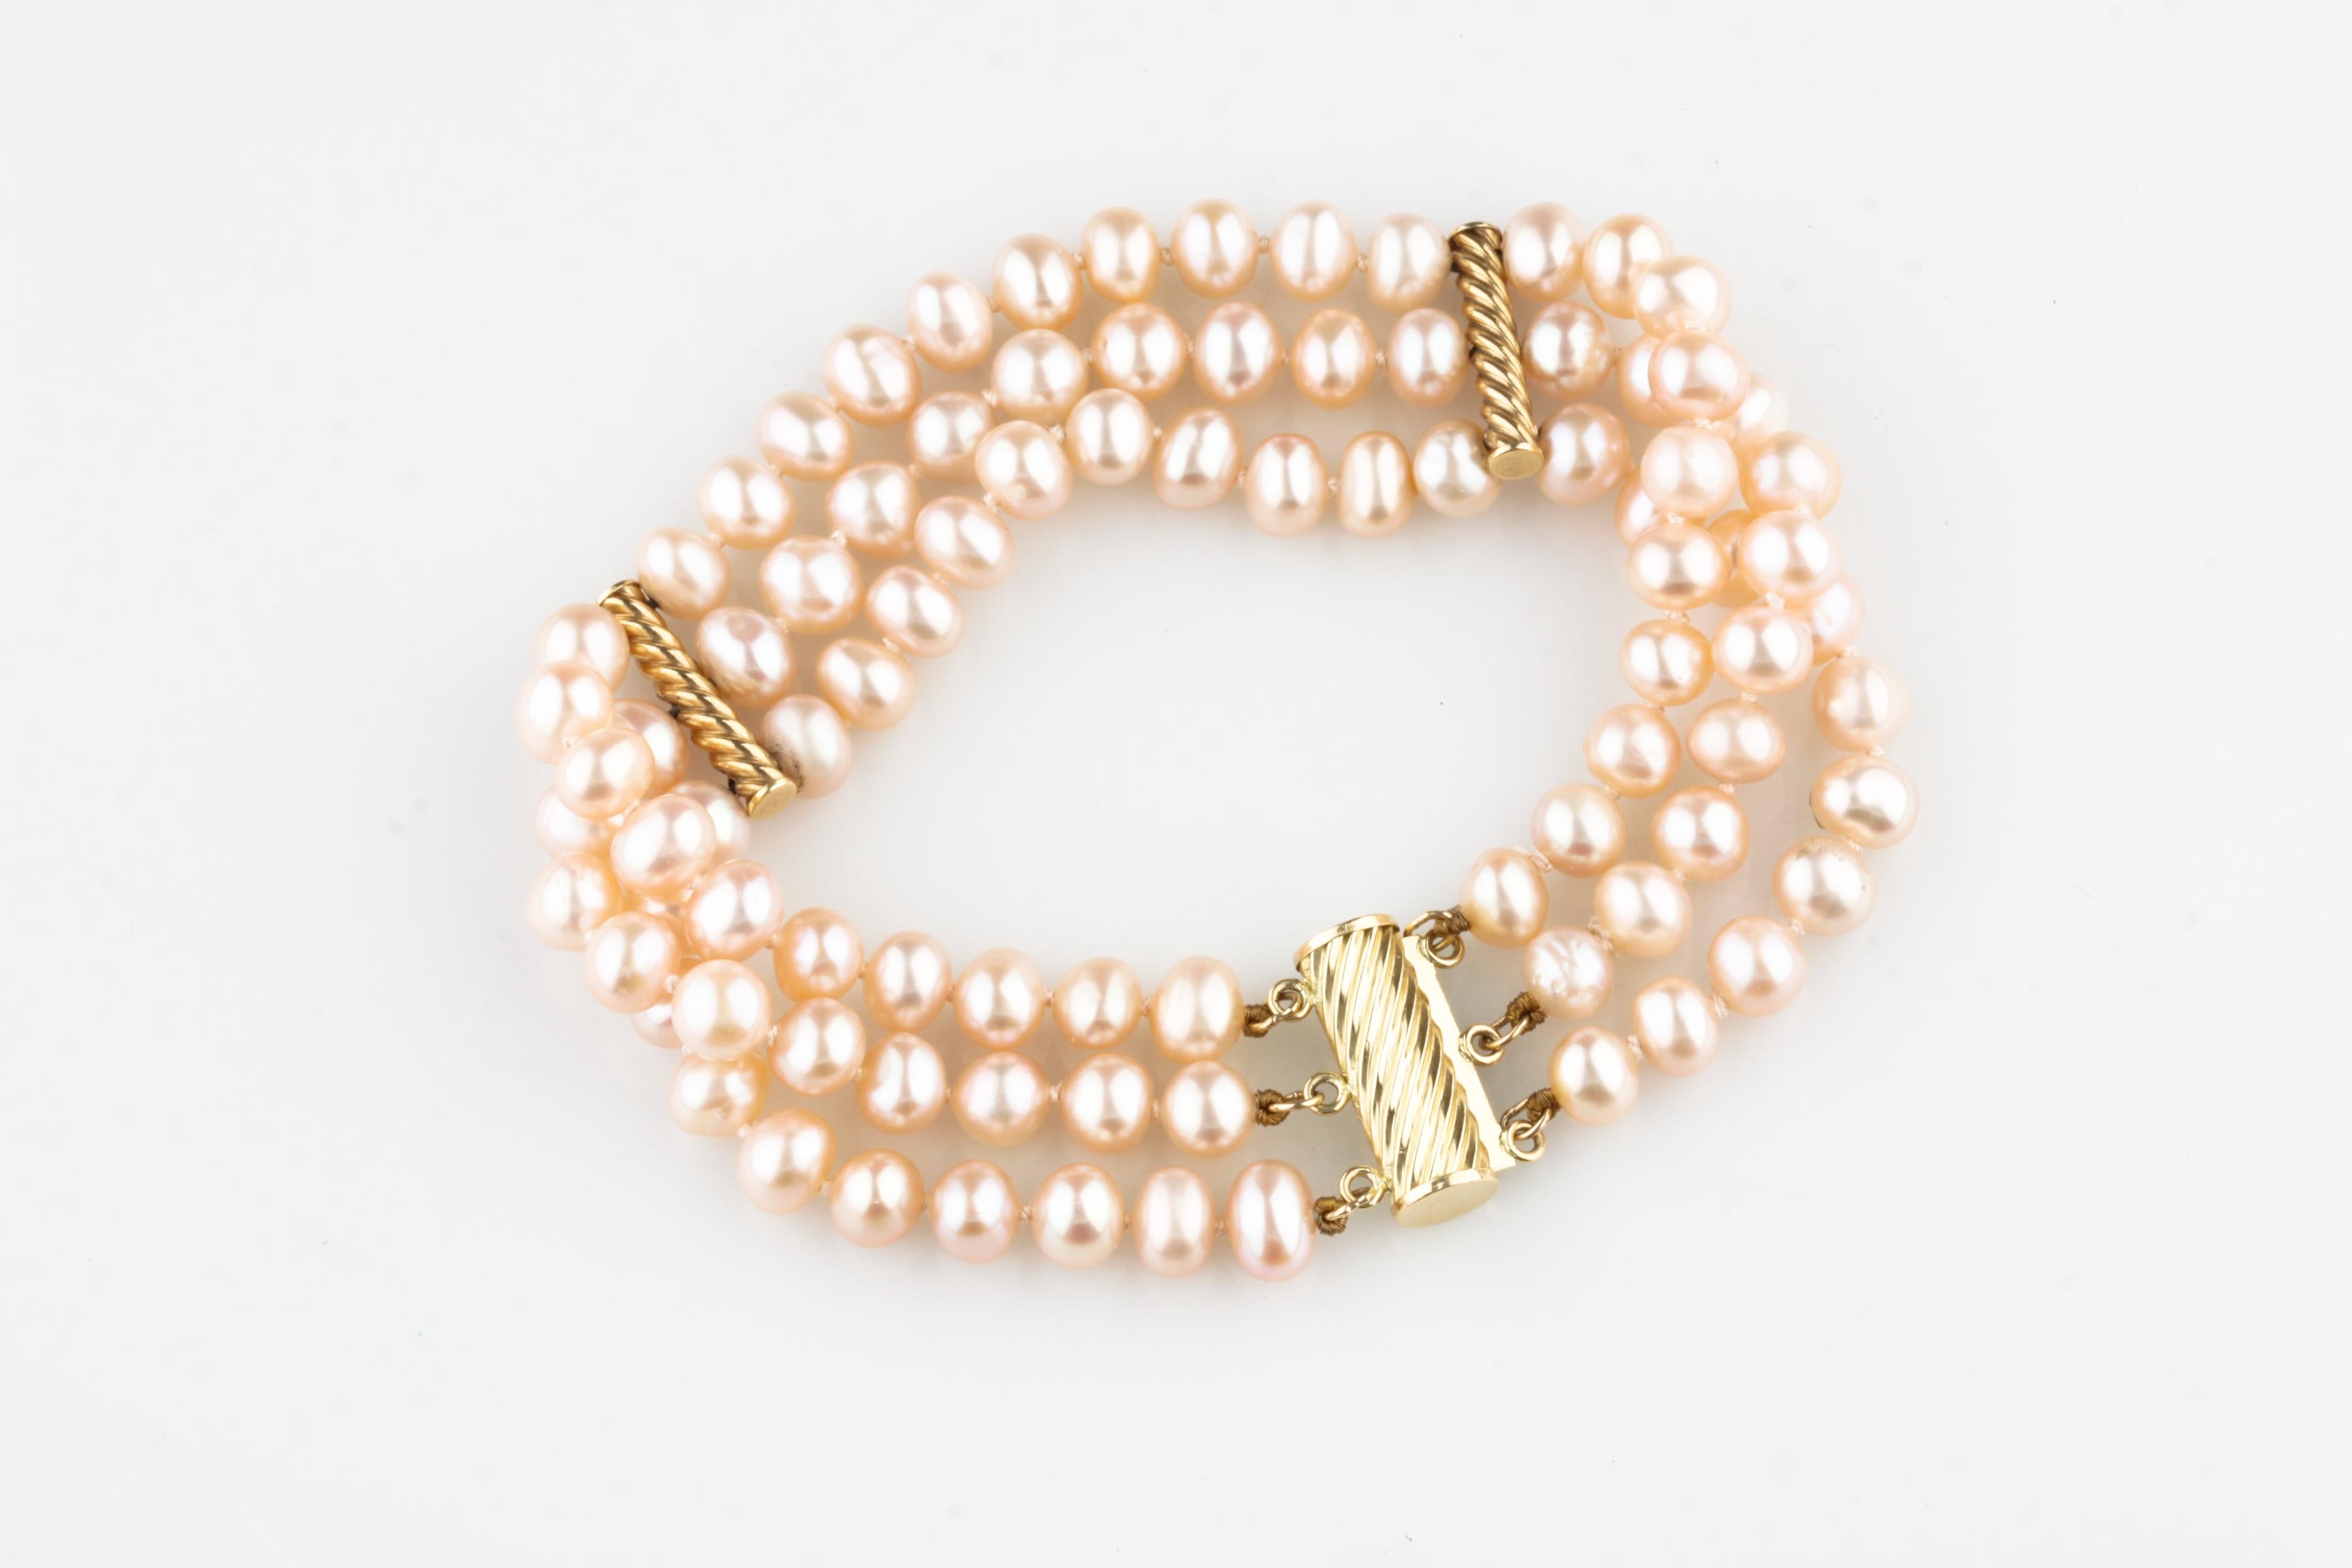 Magnifique bracelet de perles à trois brins
Perles légèrement asymétriques.
Rose, perlescence argentée
Diamètre moyen des perles = 5 - 6 mm
Comprend des accents et un fermoir en or jaune 14k.
Masse totale = 25,2 grammes
Longueur totale = 7,5